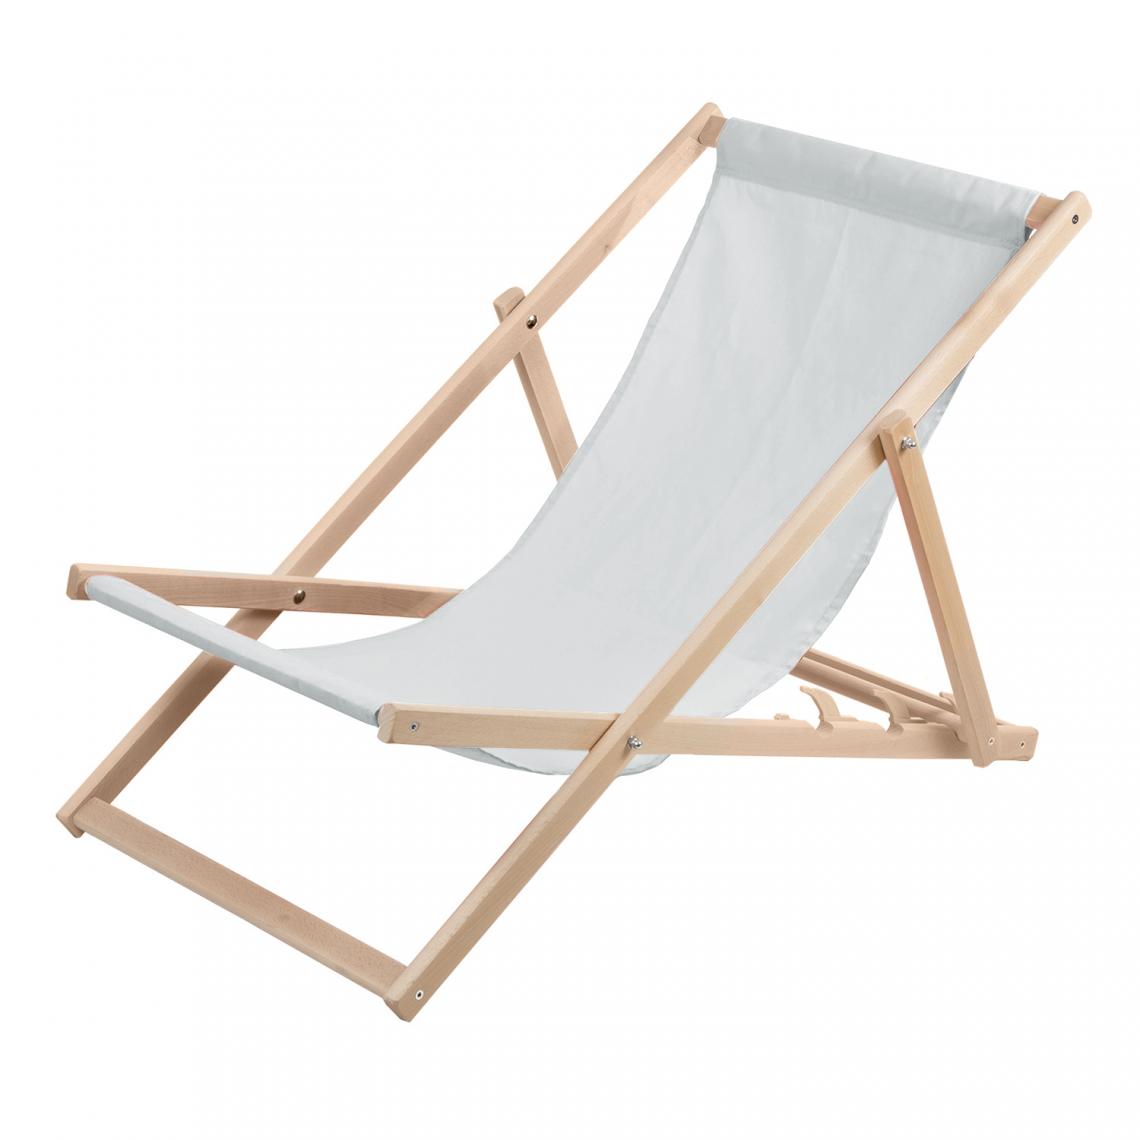 Sans Marque - Chaise longue Wood Ok confortable ,en bois , gris clair, idéale pour la plage, le balcon, la terrasse - Transats, chaises longues